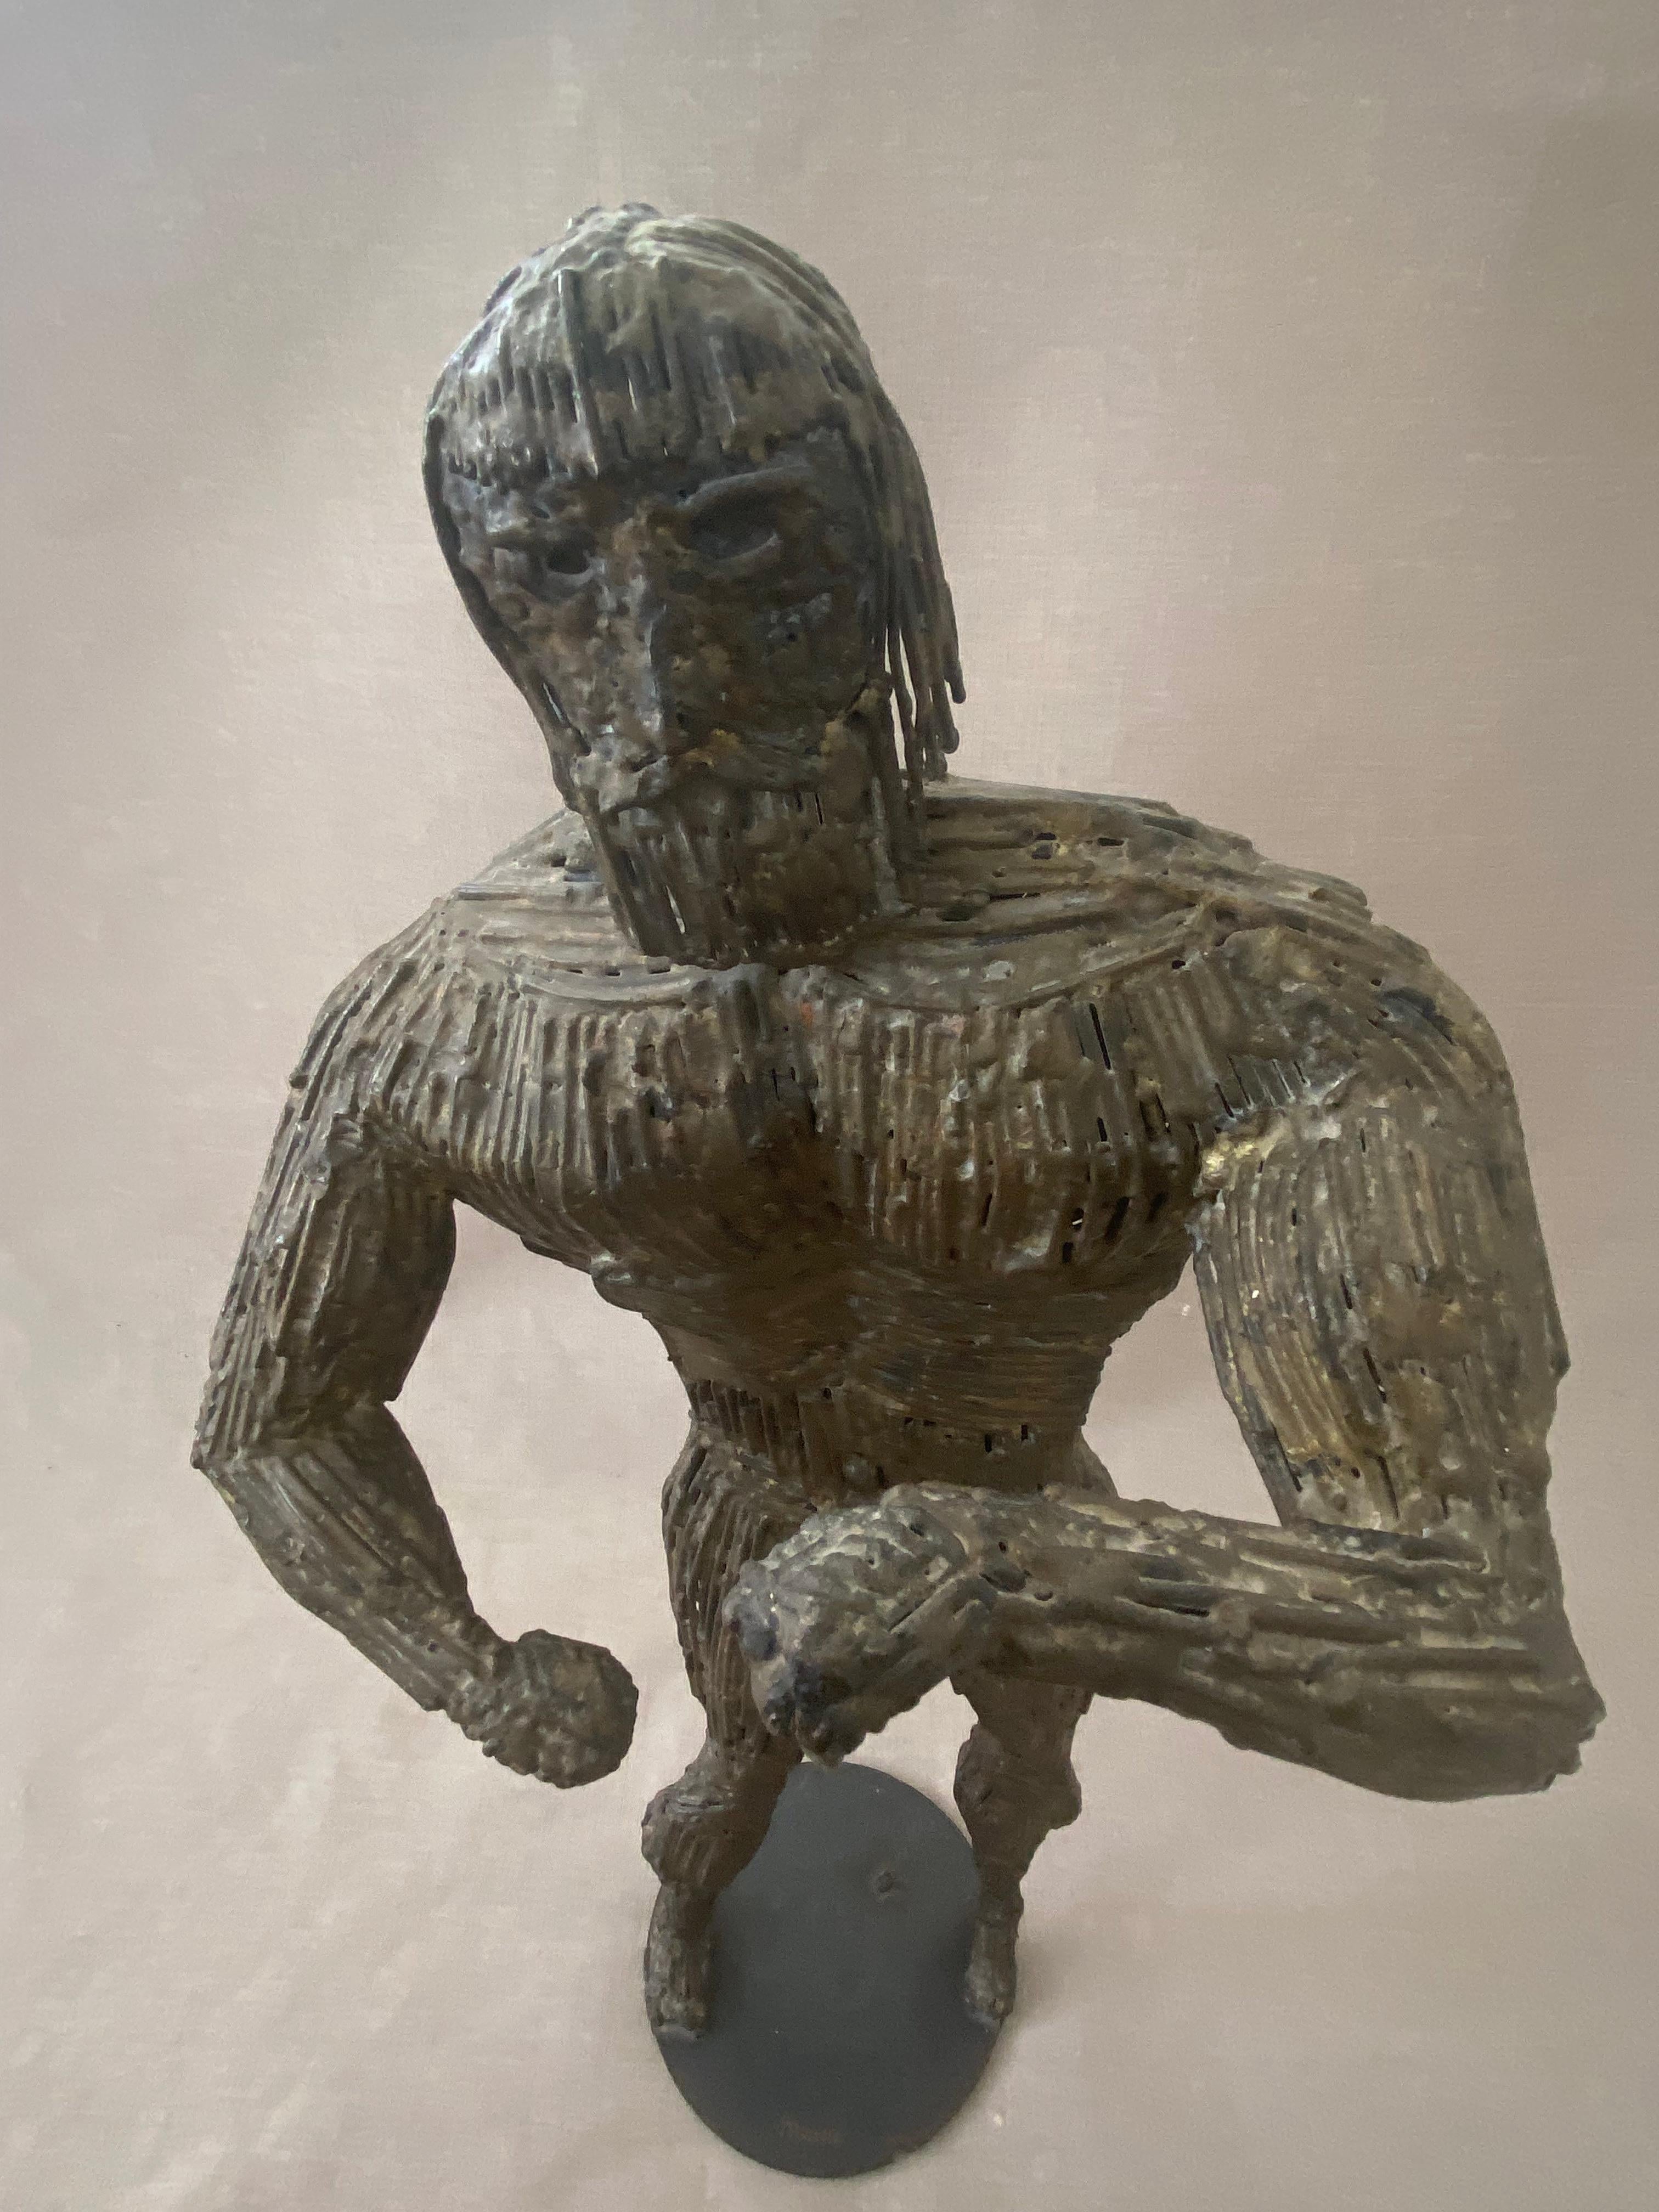 Brutalistische Skulptur des Herkules von Liza Monk - WPA-Künstlerin aus Los Angeles.
Schwere und geschweißte Metallteile/Nägel.

